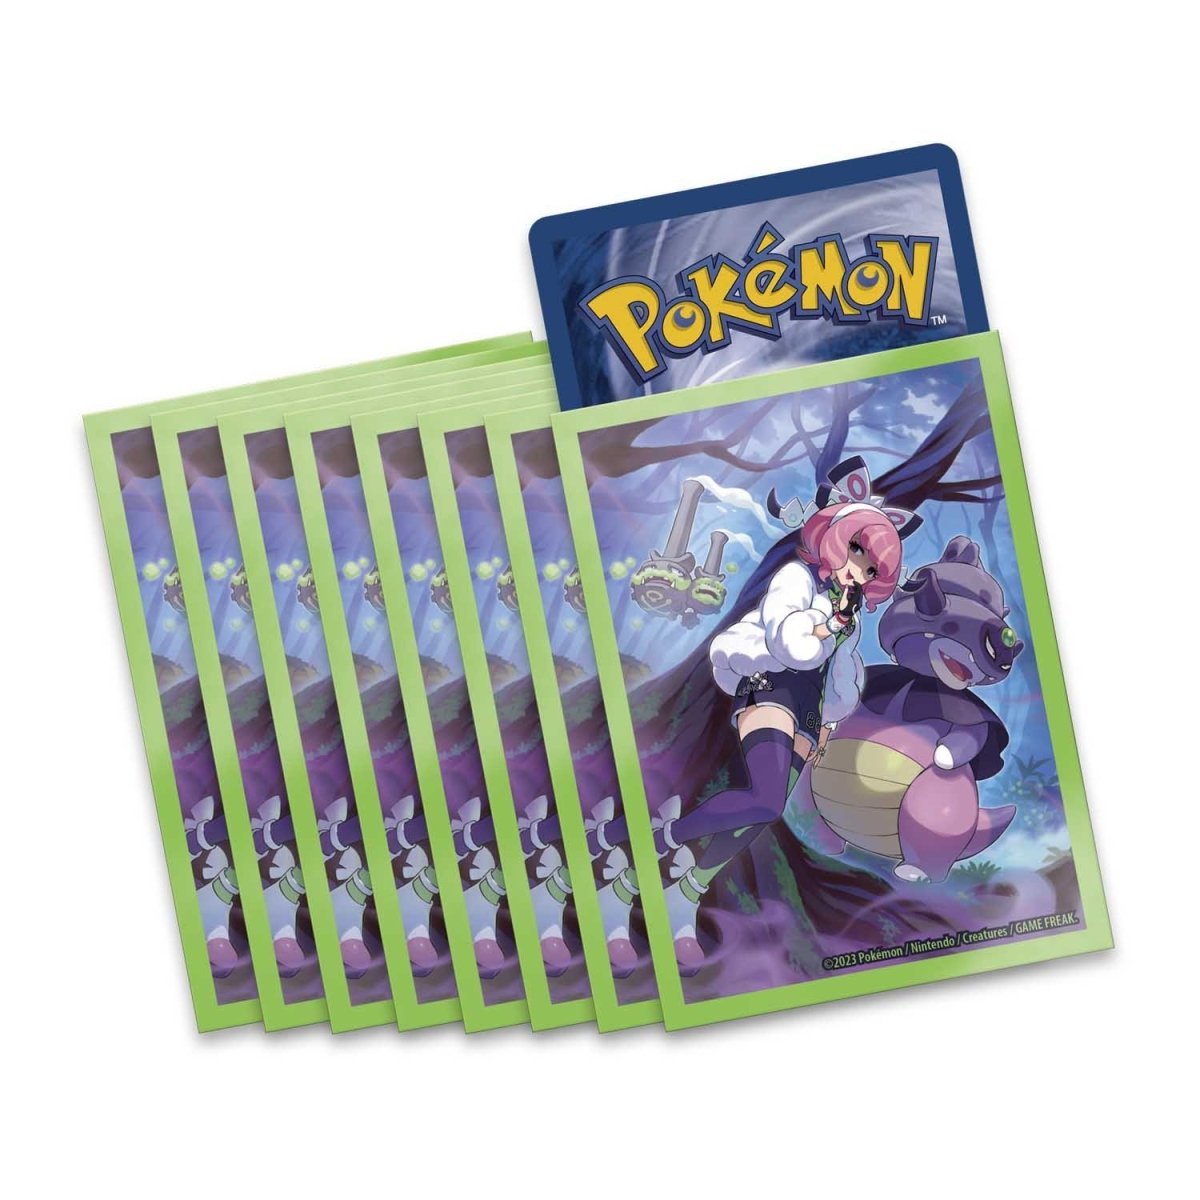 Pokémon TCG: Klara Premium Tournament Collection - PokeRvm